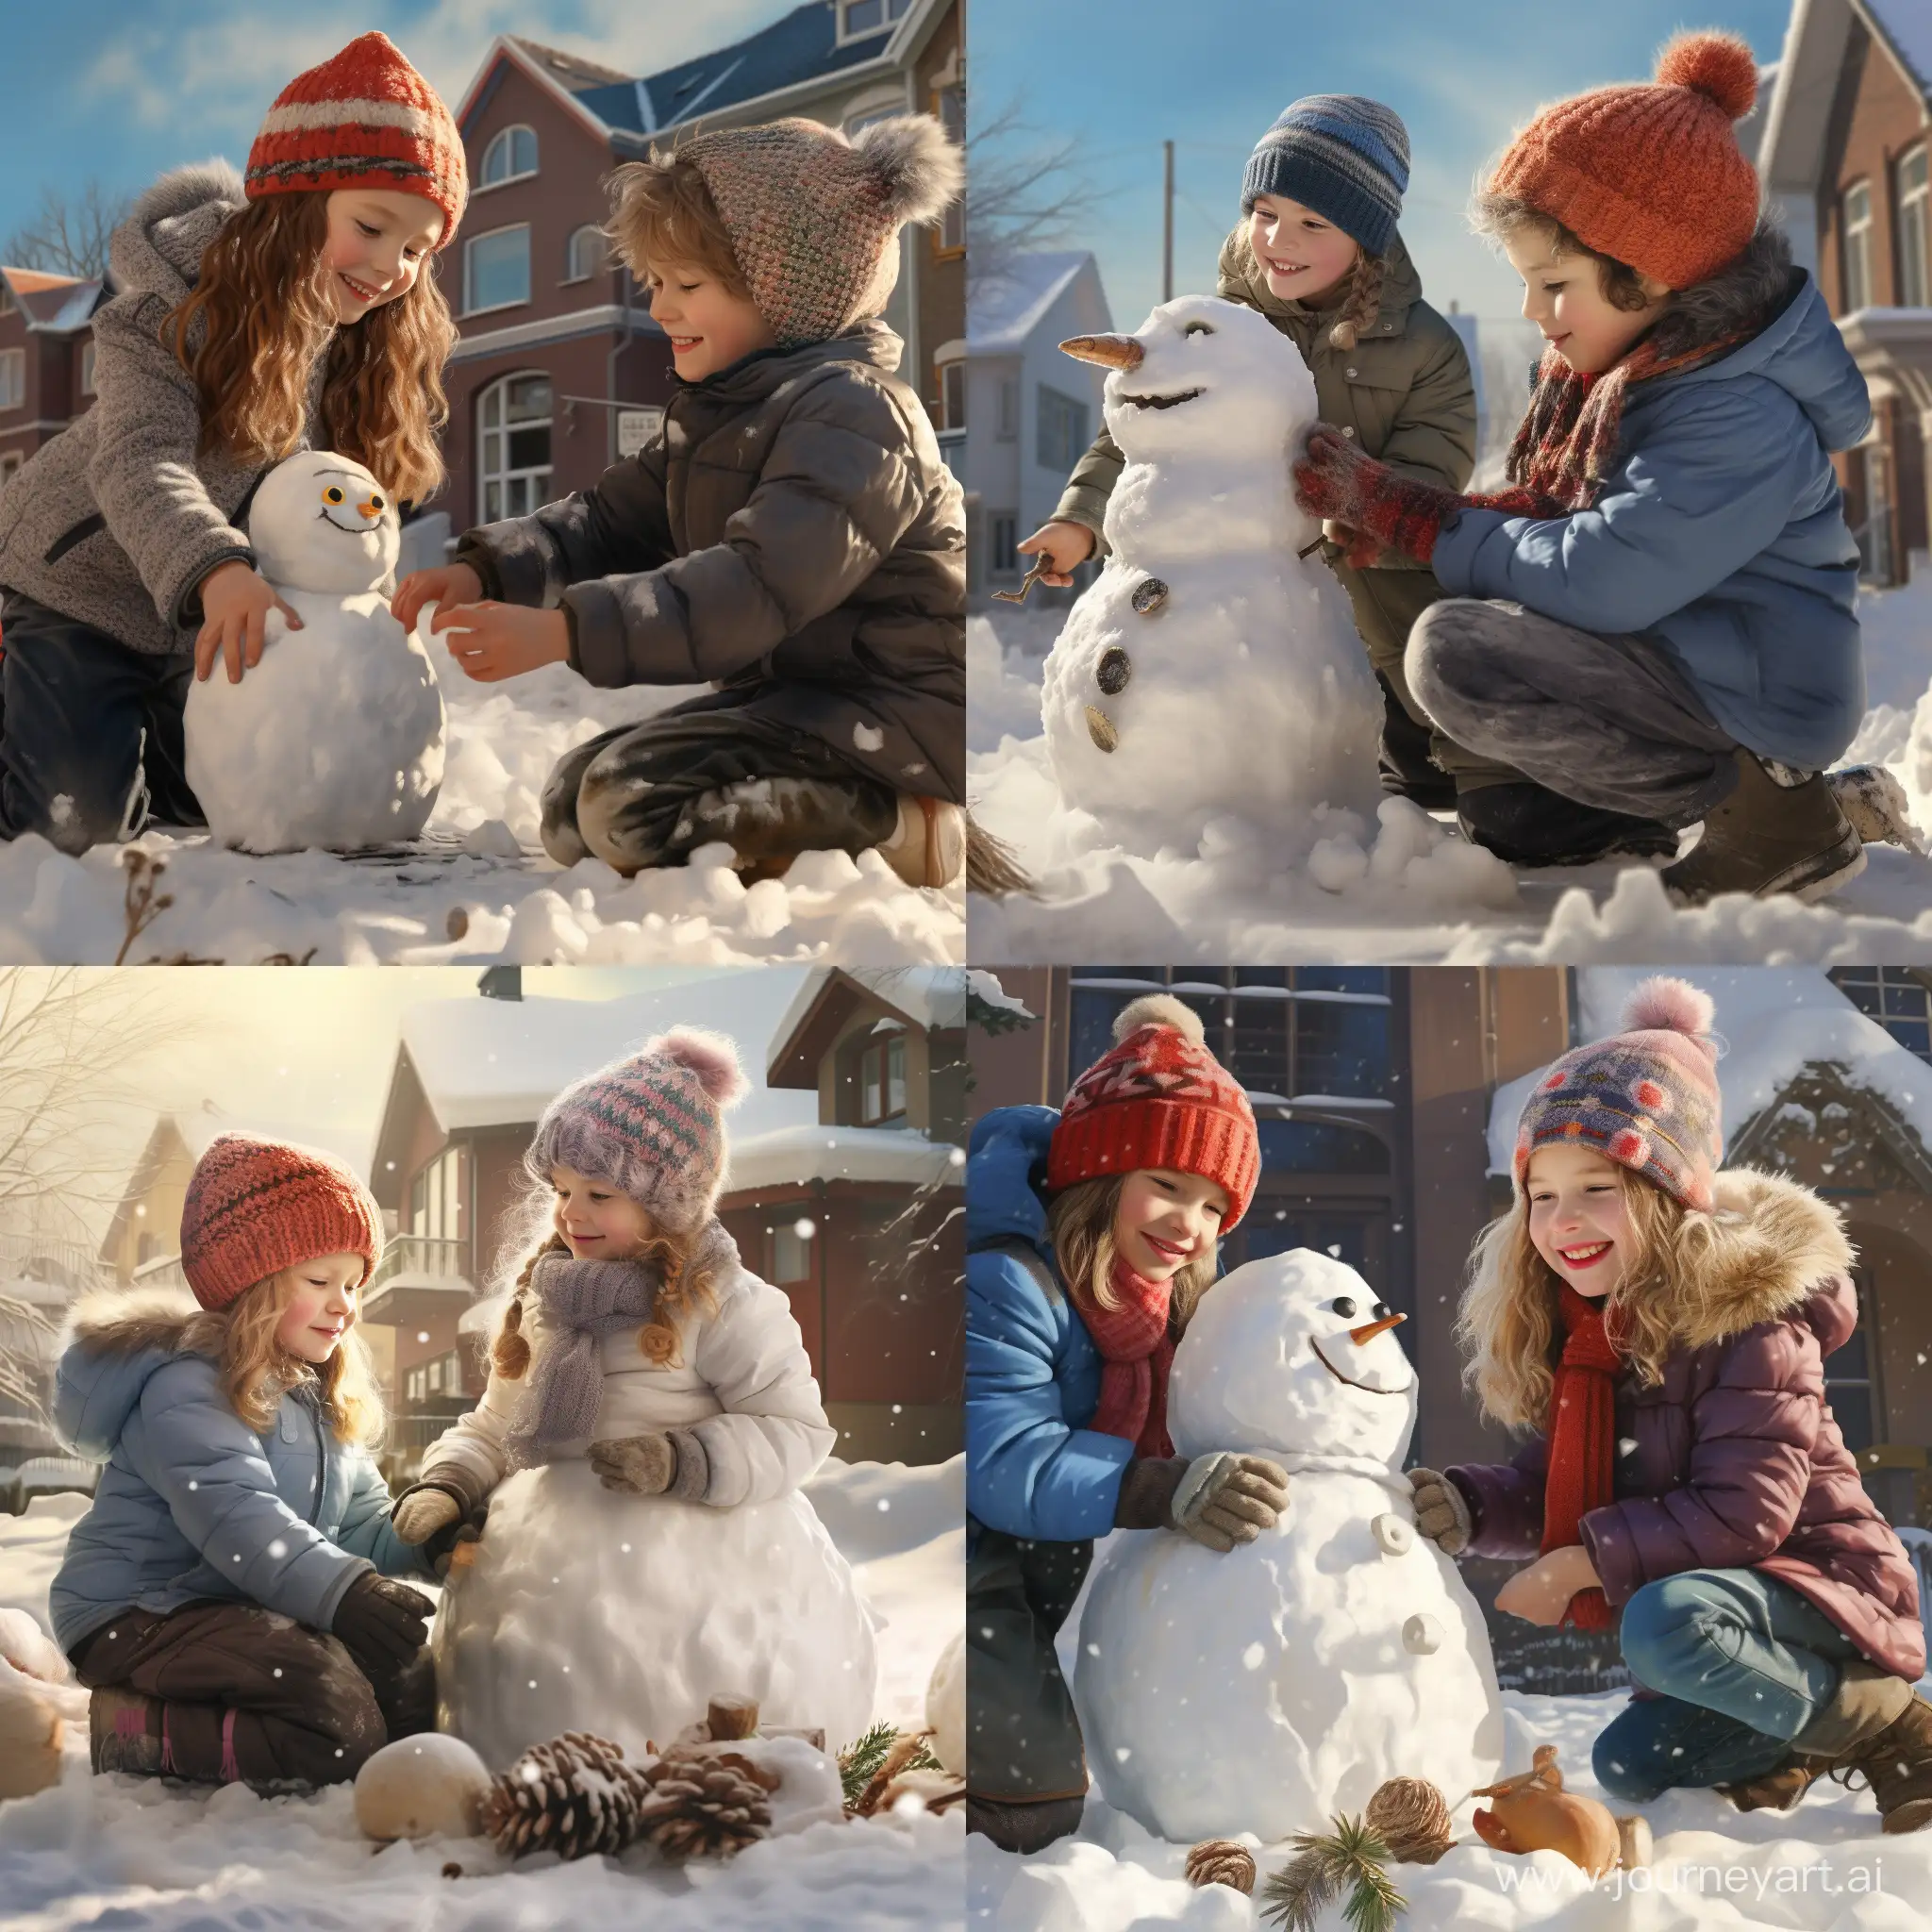 Весёлые дети в зимней одежде, лепят снеговика во дворе дома в городе, солнечный зимний день, фотография, гиперреализм, высокое разрешение